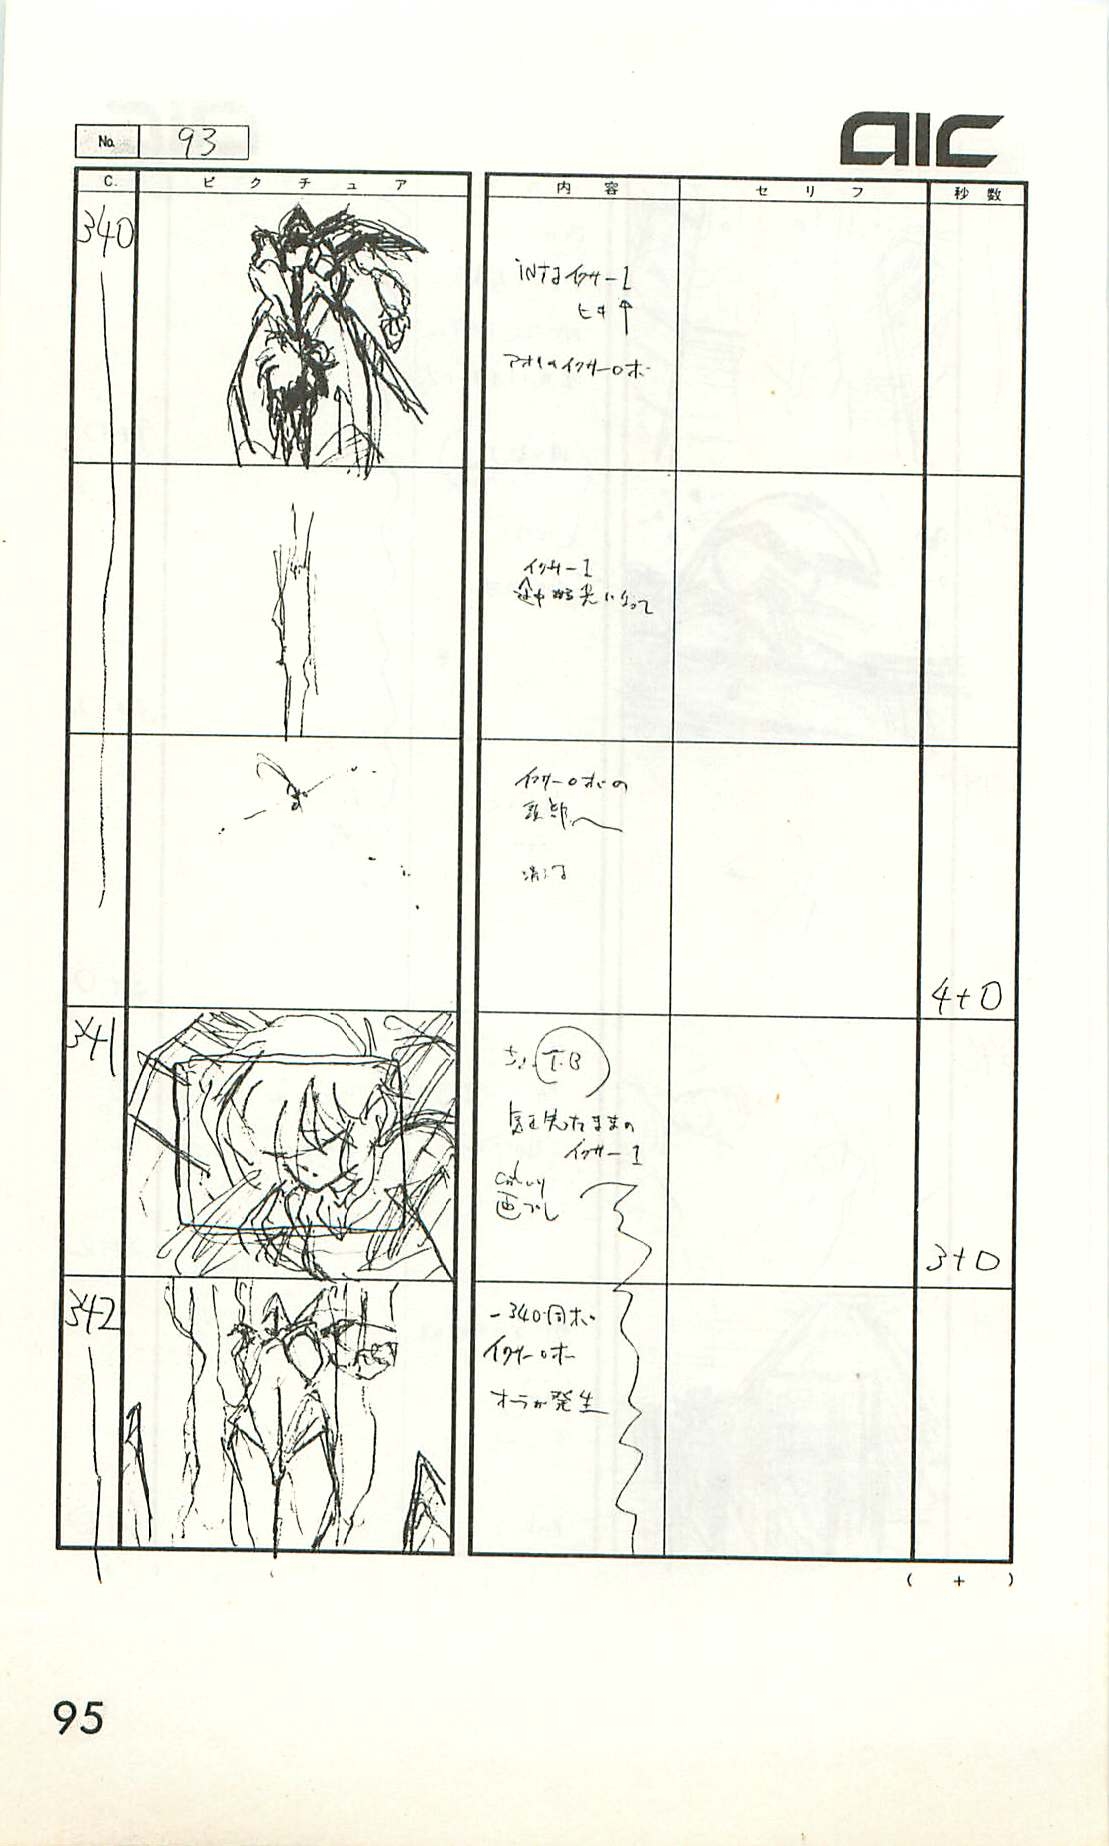 Iczer-One OVA 3 Storyboards 95